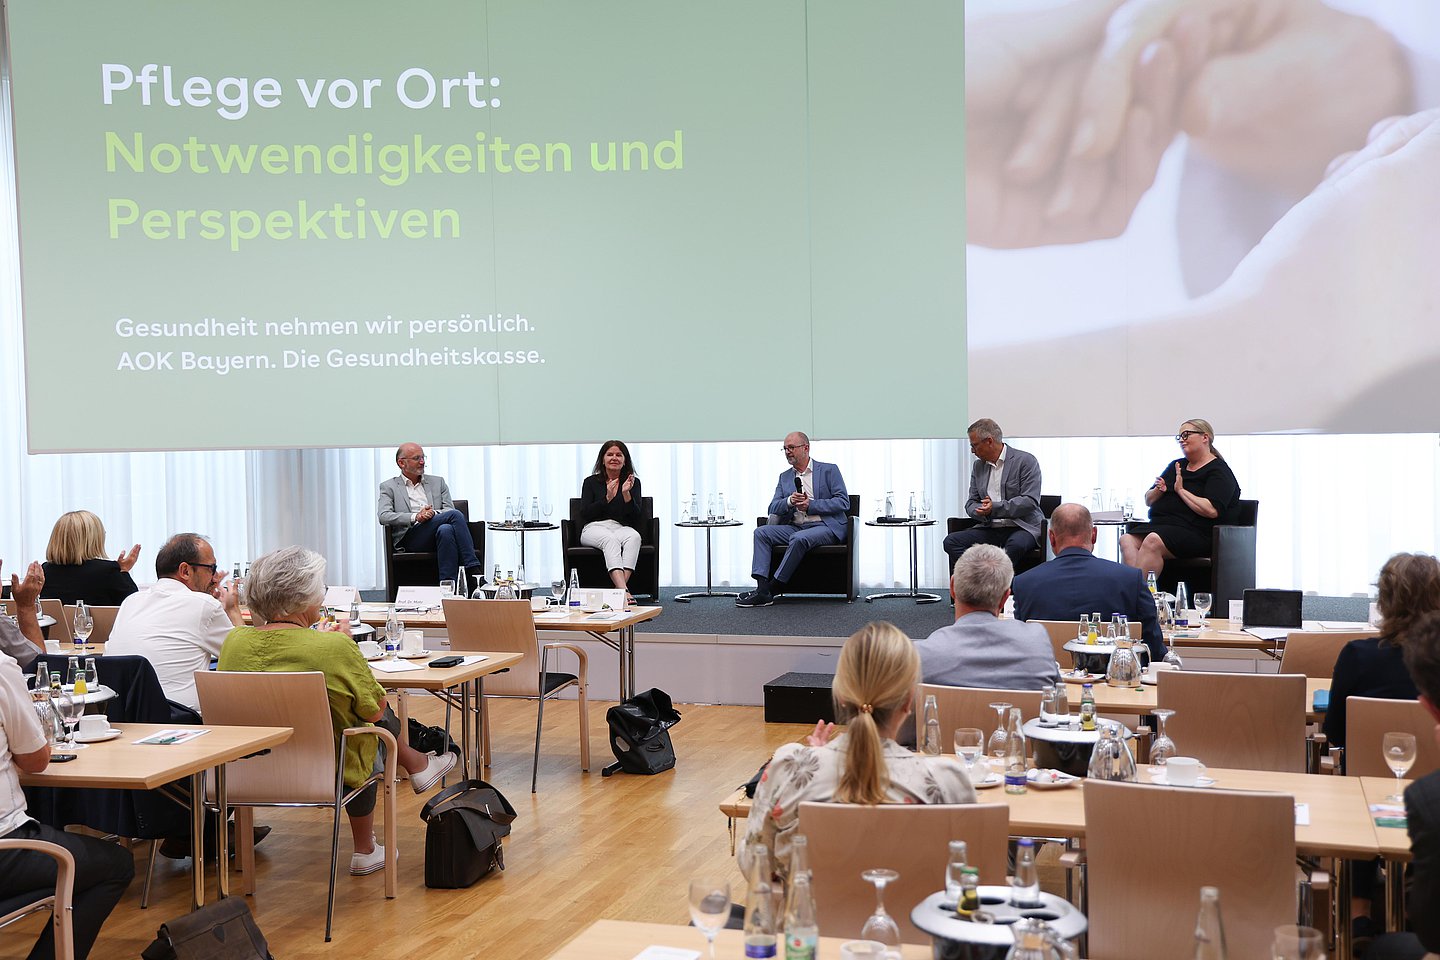 Auf dem Podium diskutieren Expertinnen und Experten bei einer Veranstaltung der AOK Bayern in München über neue Wege in der Pflege.